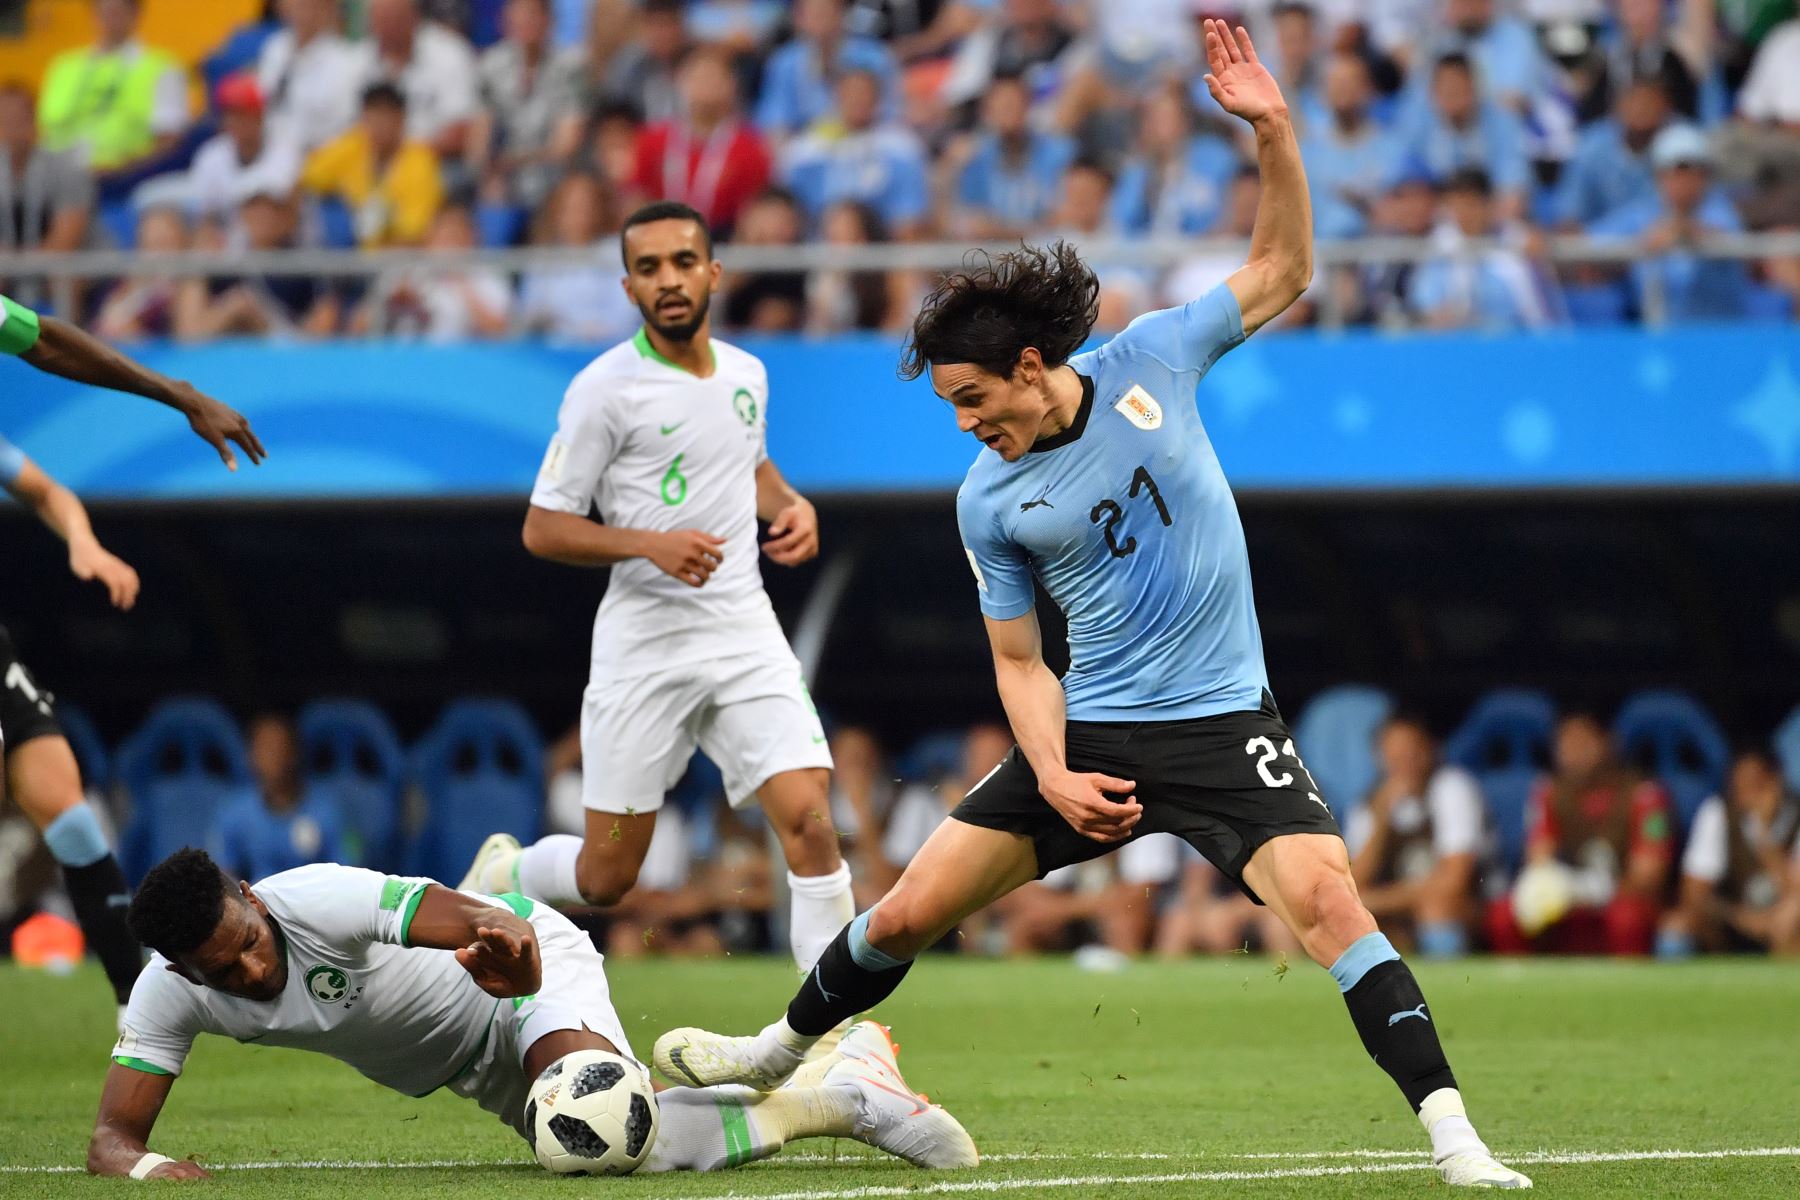 El delantero uruguayo Edinson Cavani (R) compite con el defensor de Arabia Saudita Ali Al-Bulaihi (L) durante el partido de fútbol del Grupo A de la Copa Mundial Rusia 2018 entre Uruguay y Arabia Saudita en el Rostov Arena en Rostov-On-Don el 20 de junio de 2018. / AFP